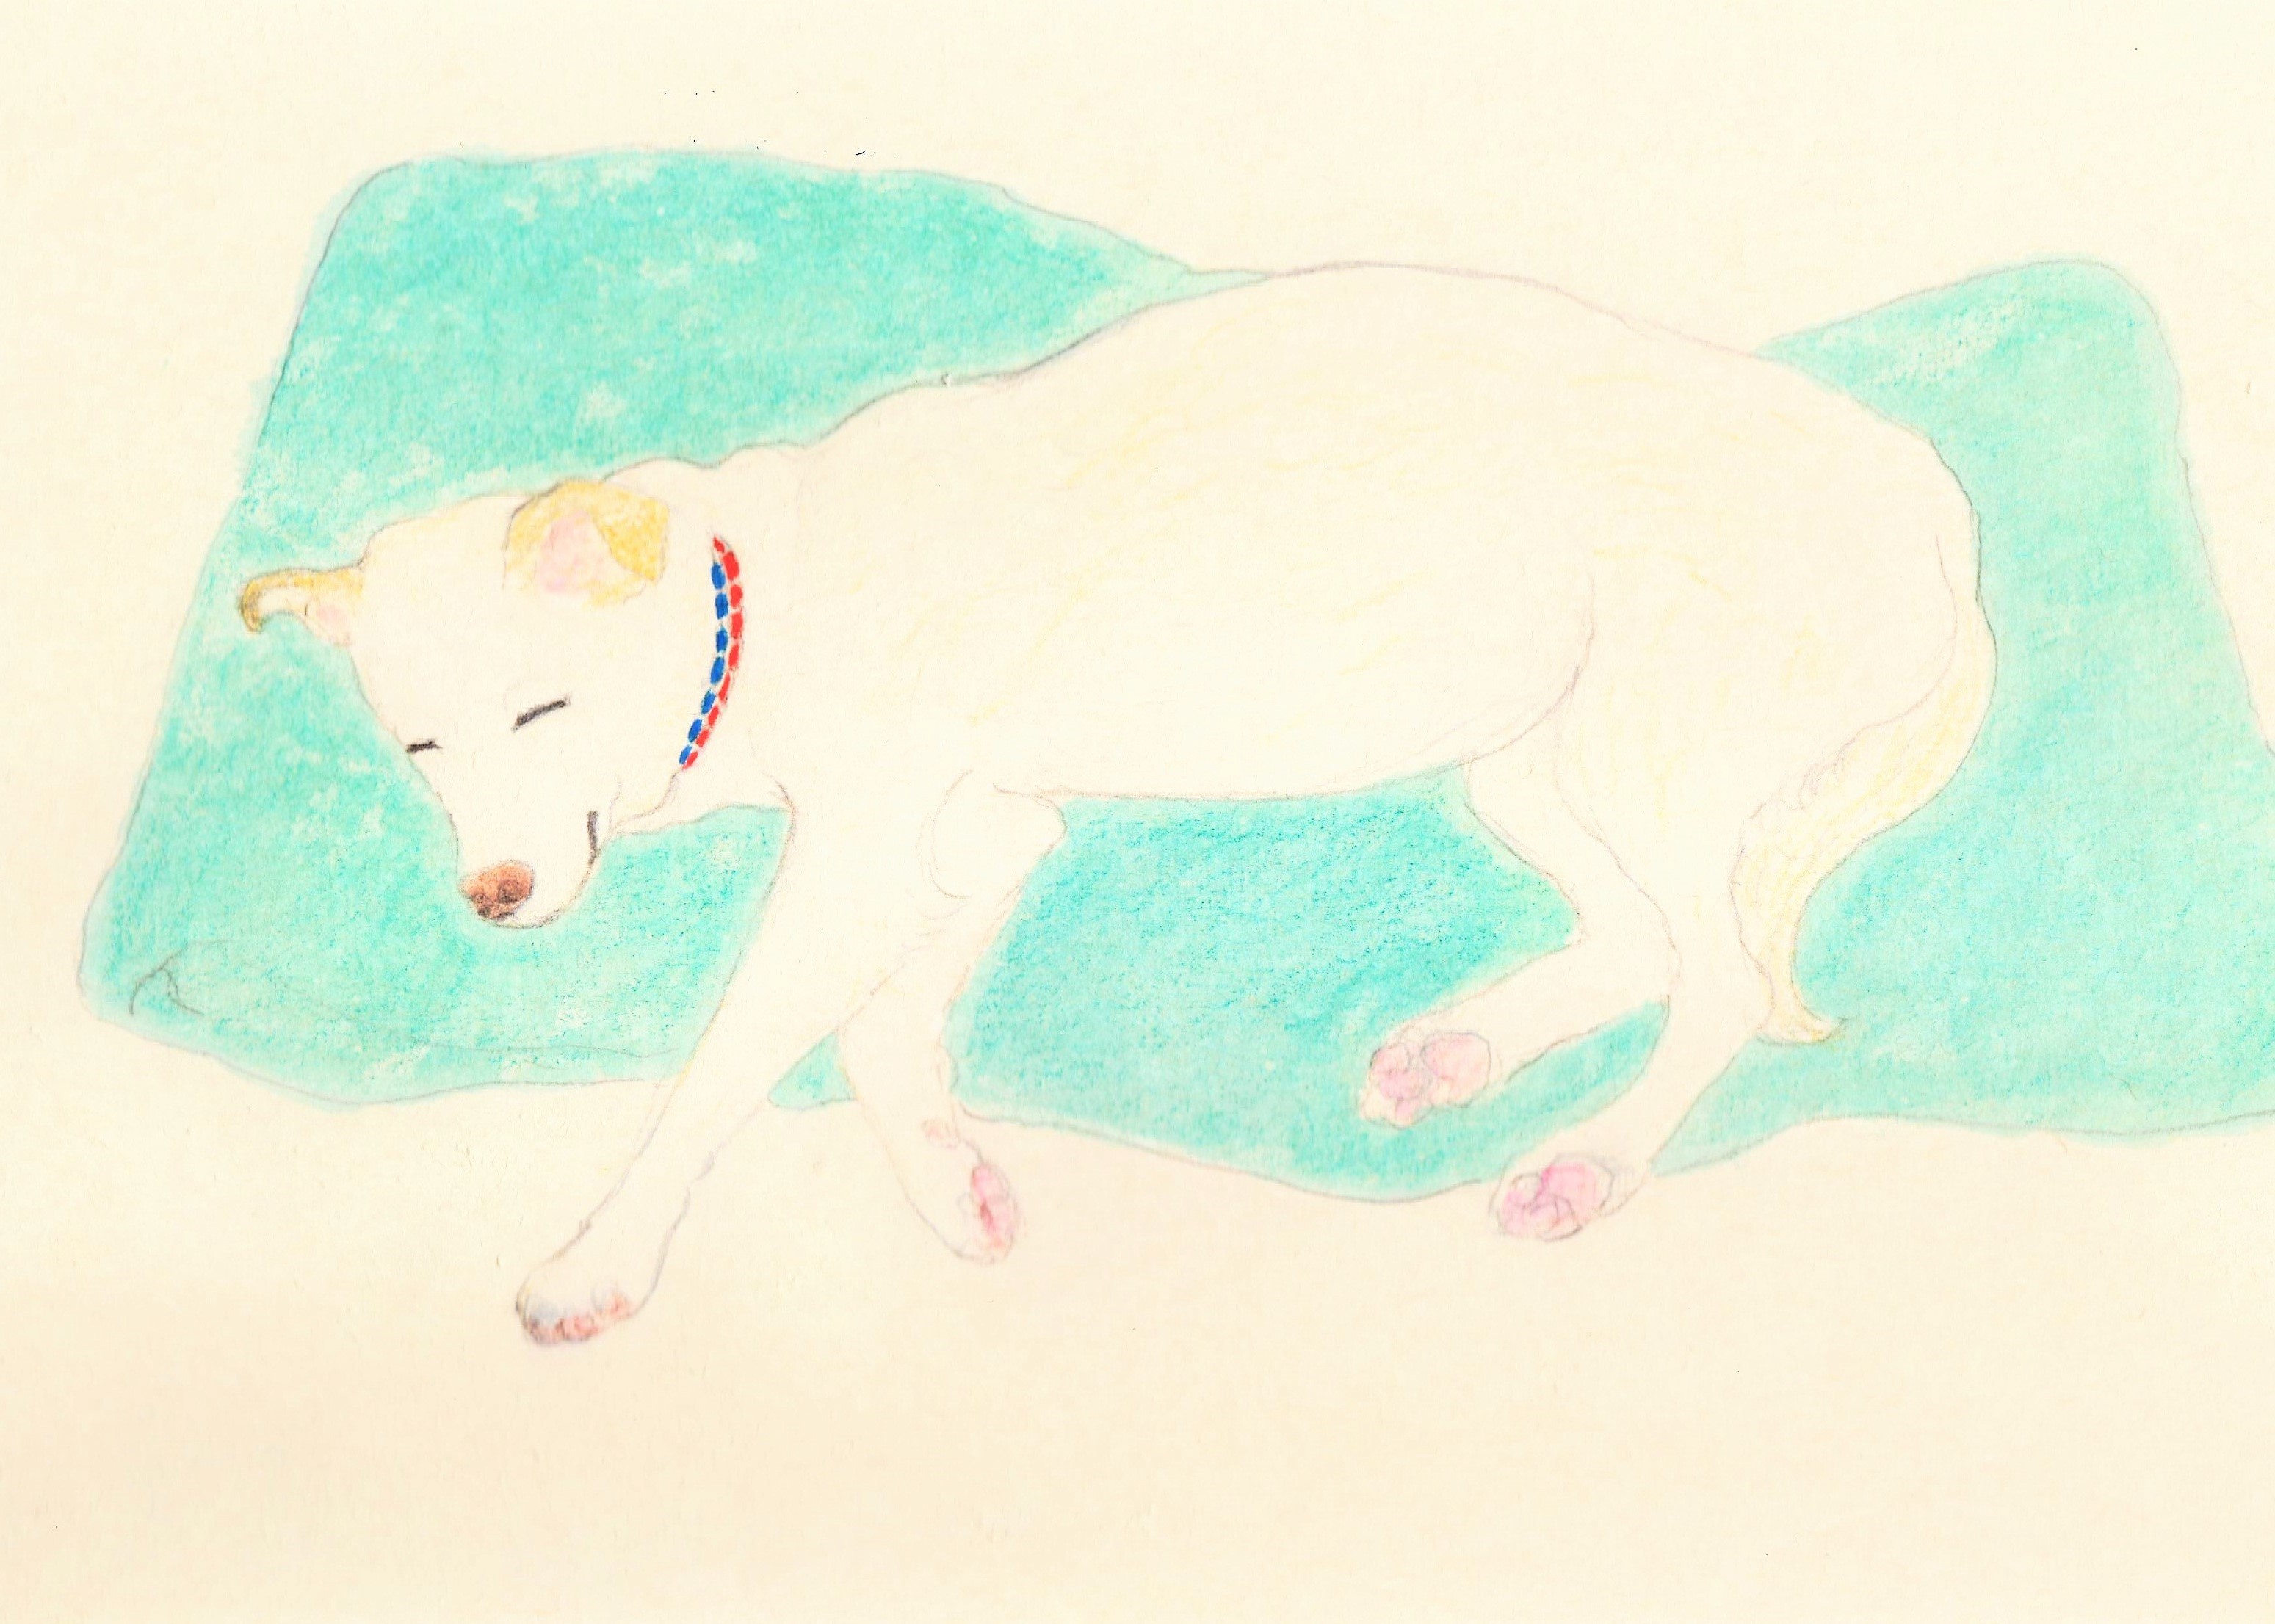 受注制作 眠る犬3 イラスト原画 額縁入り Iichi ハンドメイド クラフト作品 手仕事品の通販